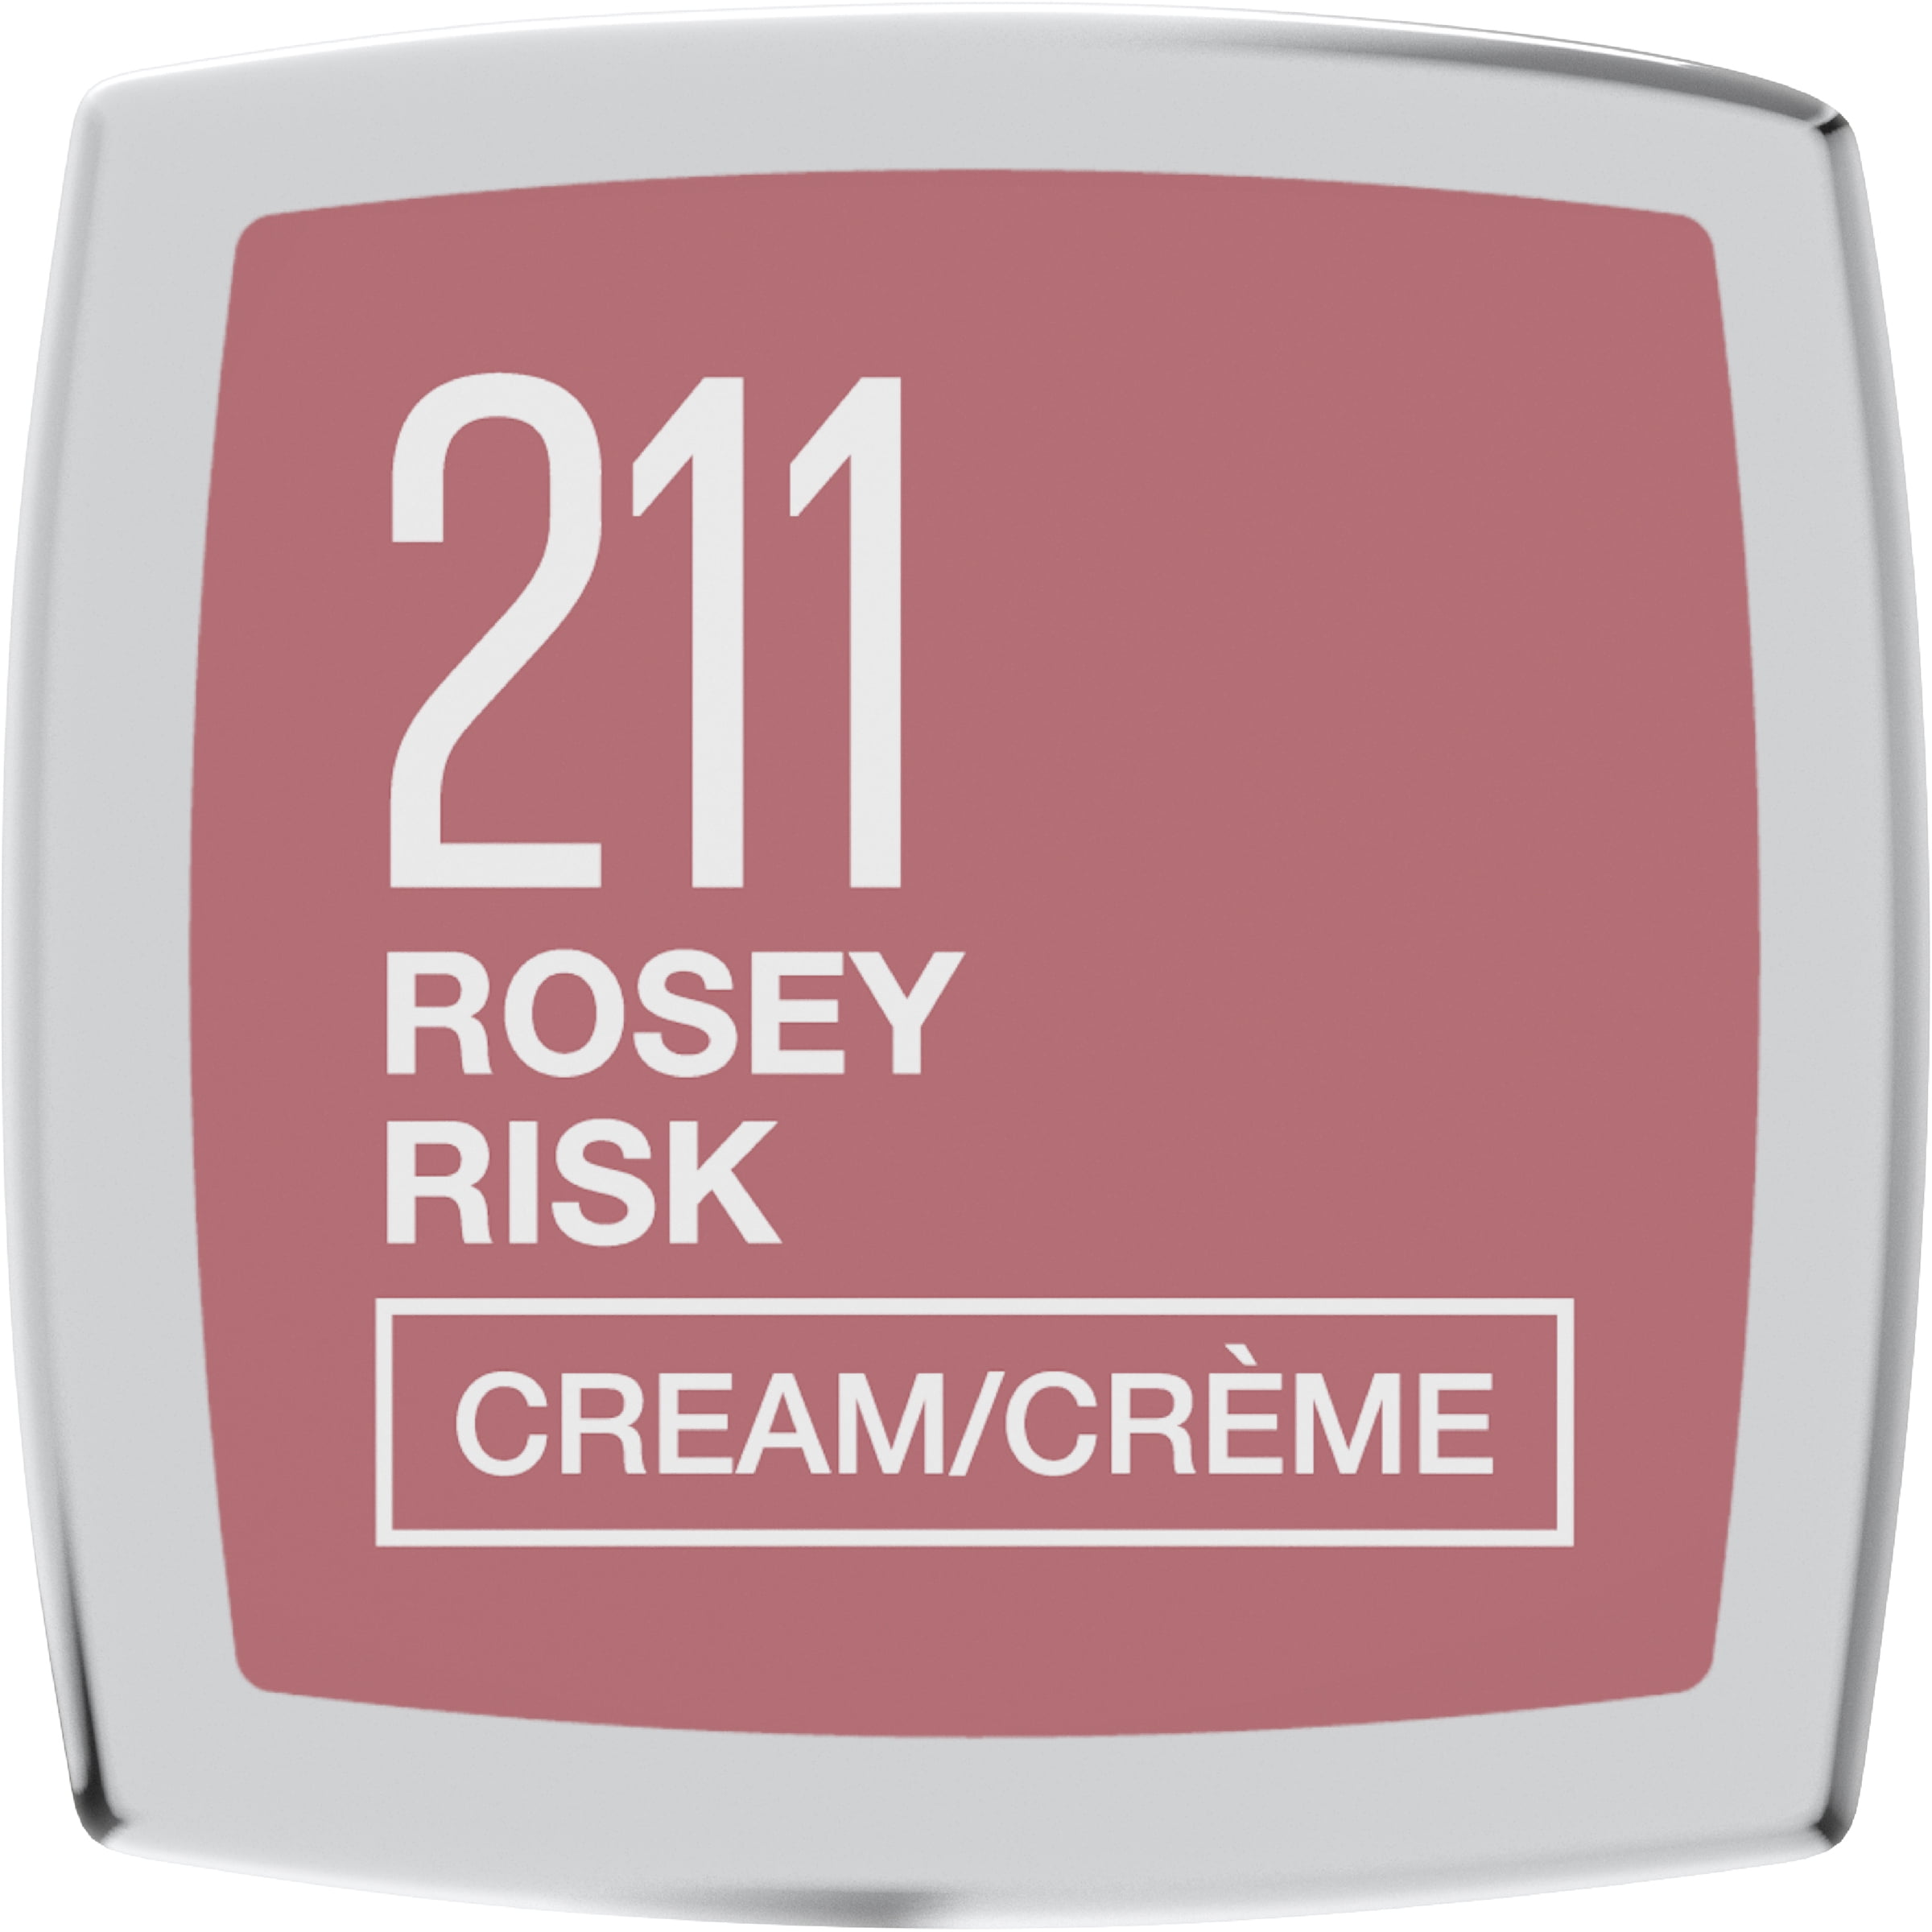 Color Risk Sensational Finish Cream Maybelline Lipstick, Rosy